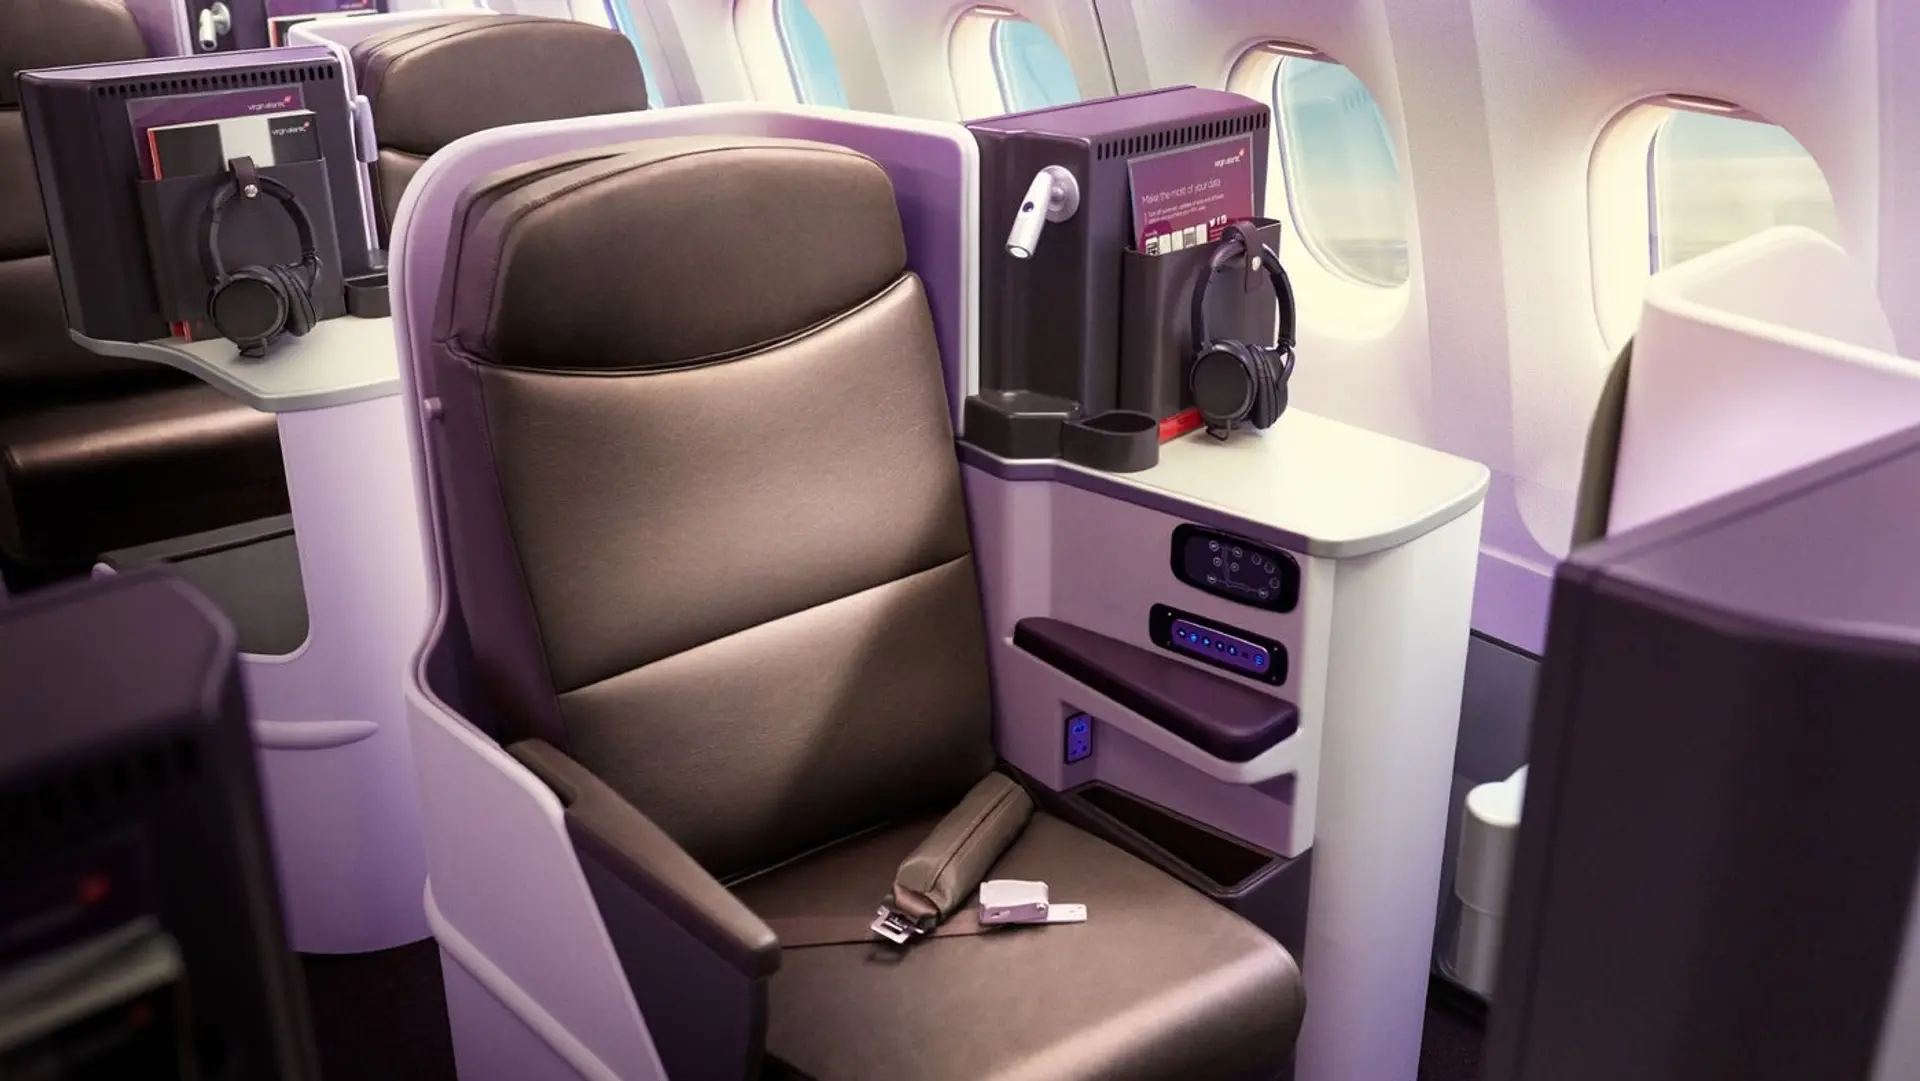 Airline review Cabin & Seat - Virgin Atlantic - 9